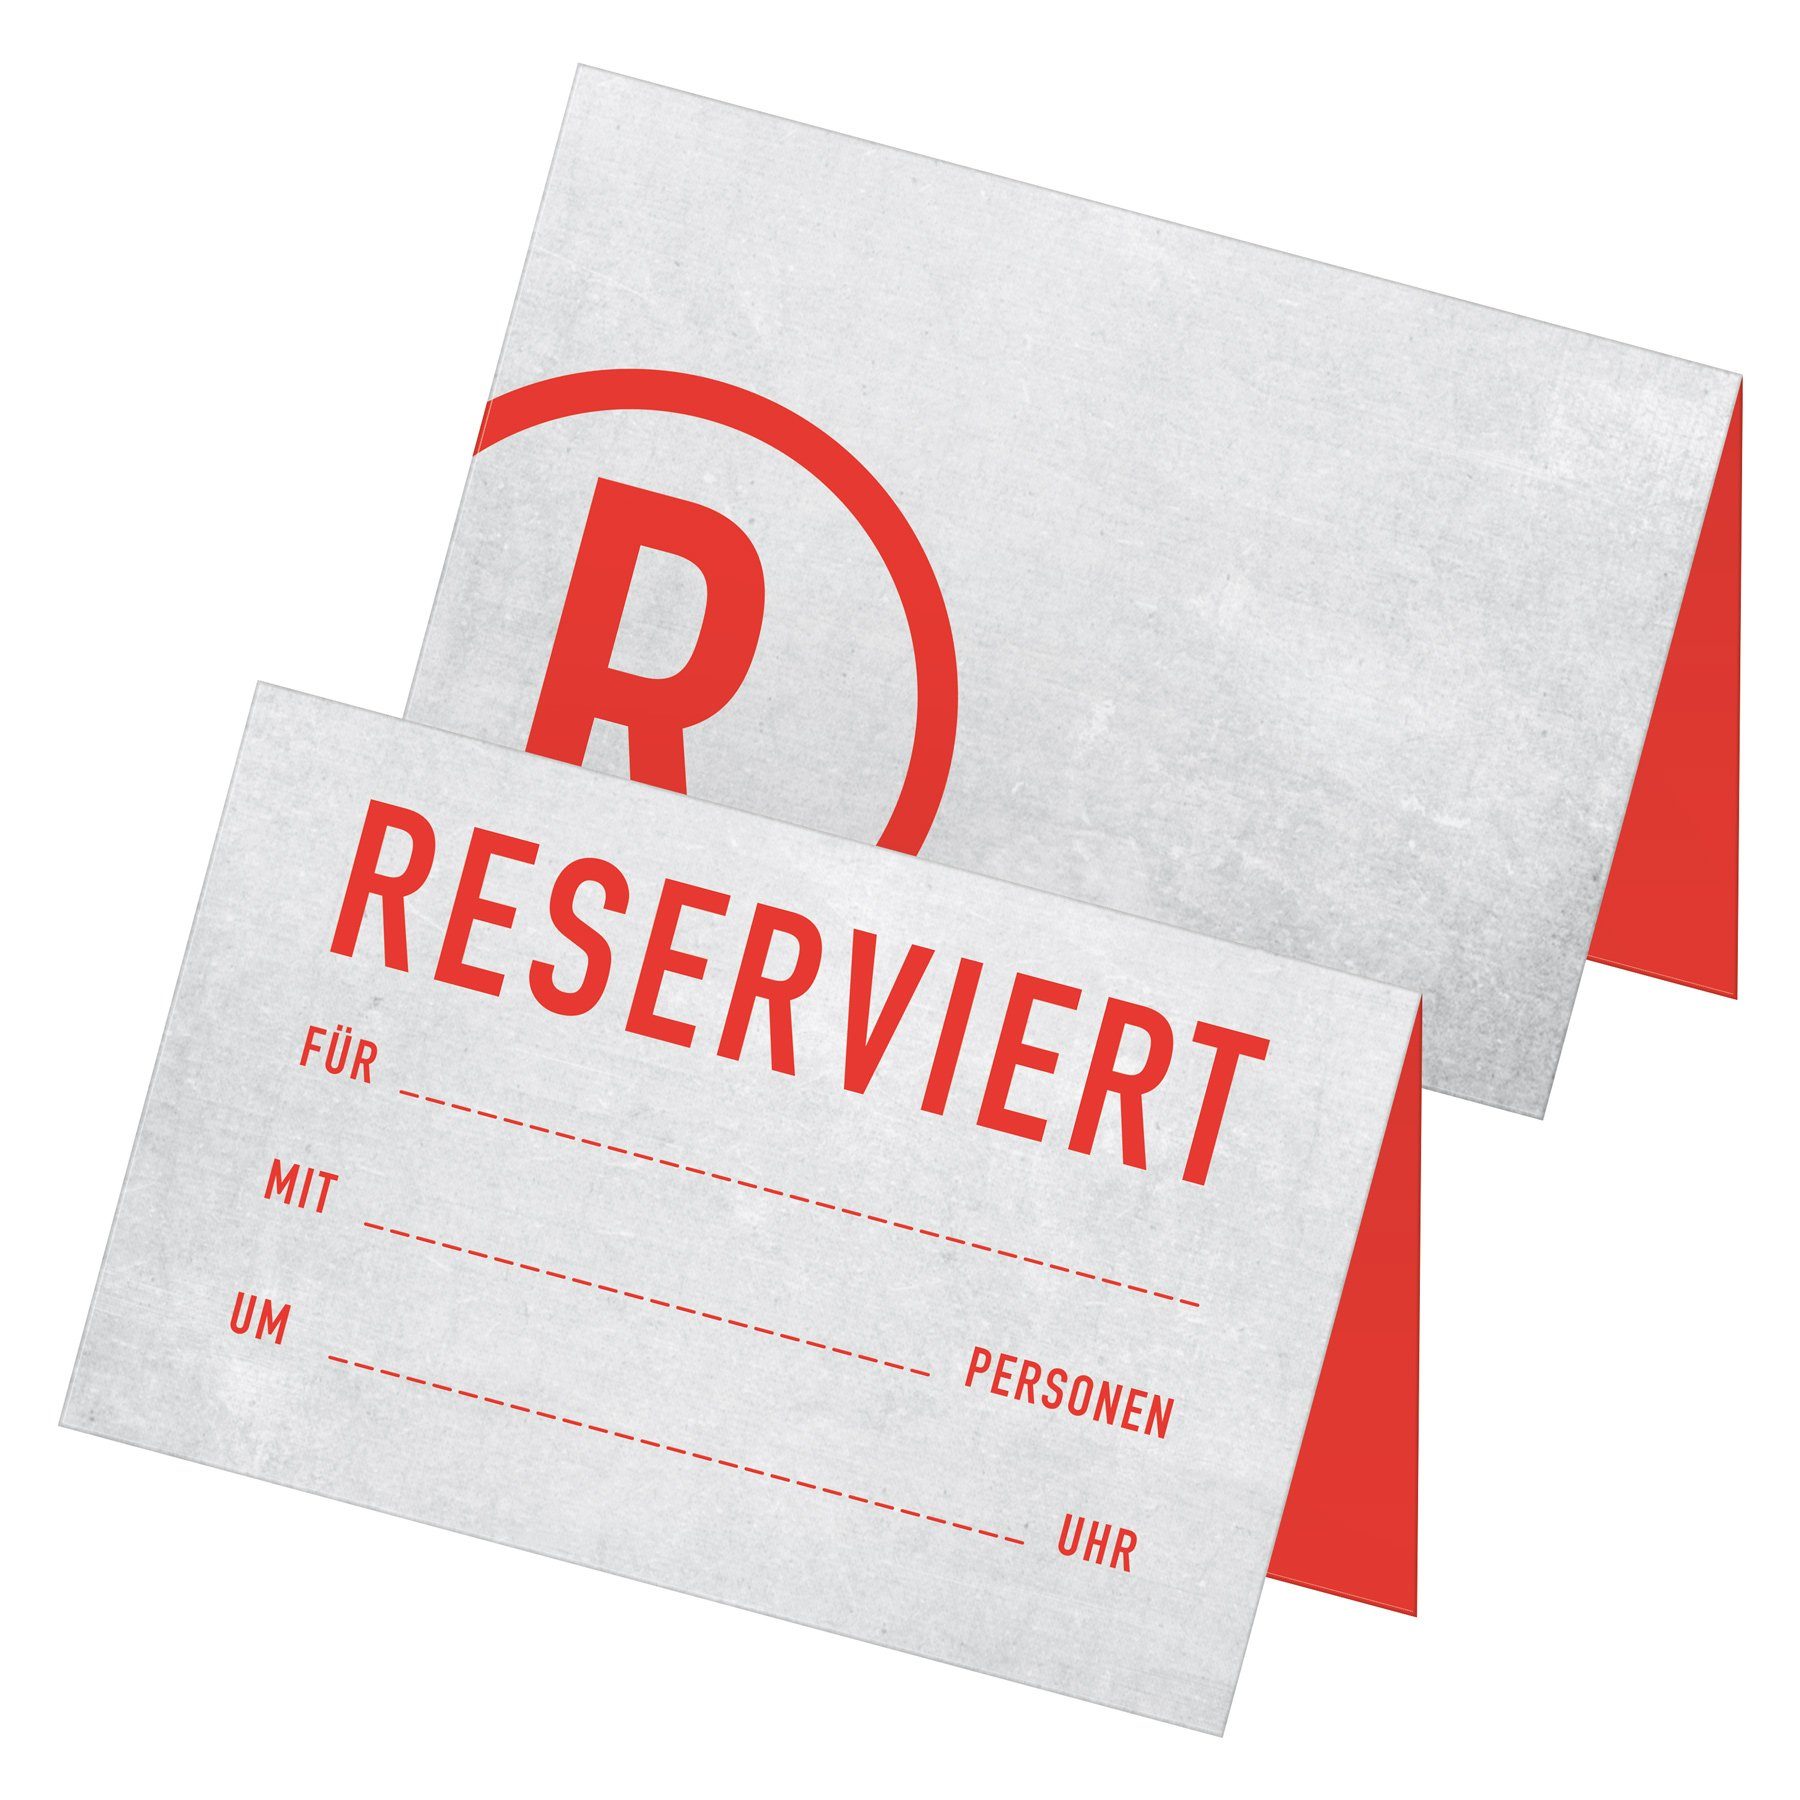 Tischkarten modern hellgrau rot Papierdekoration itenga itenga 24x zum "Reserviert" Betonoptik